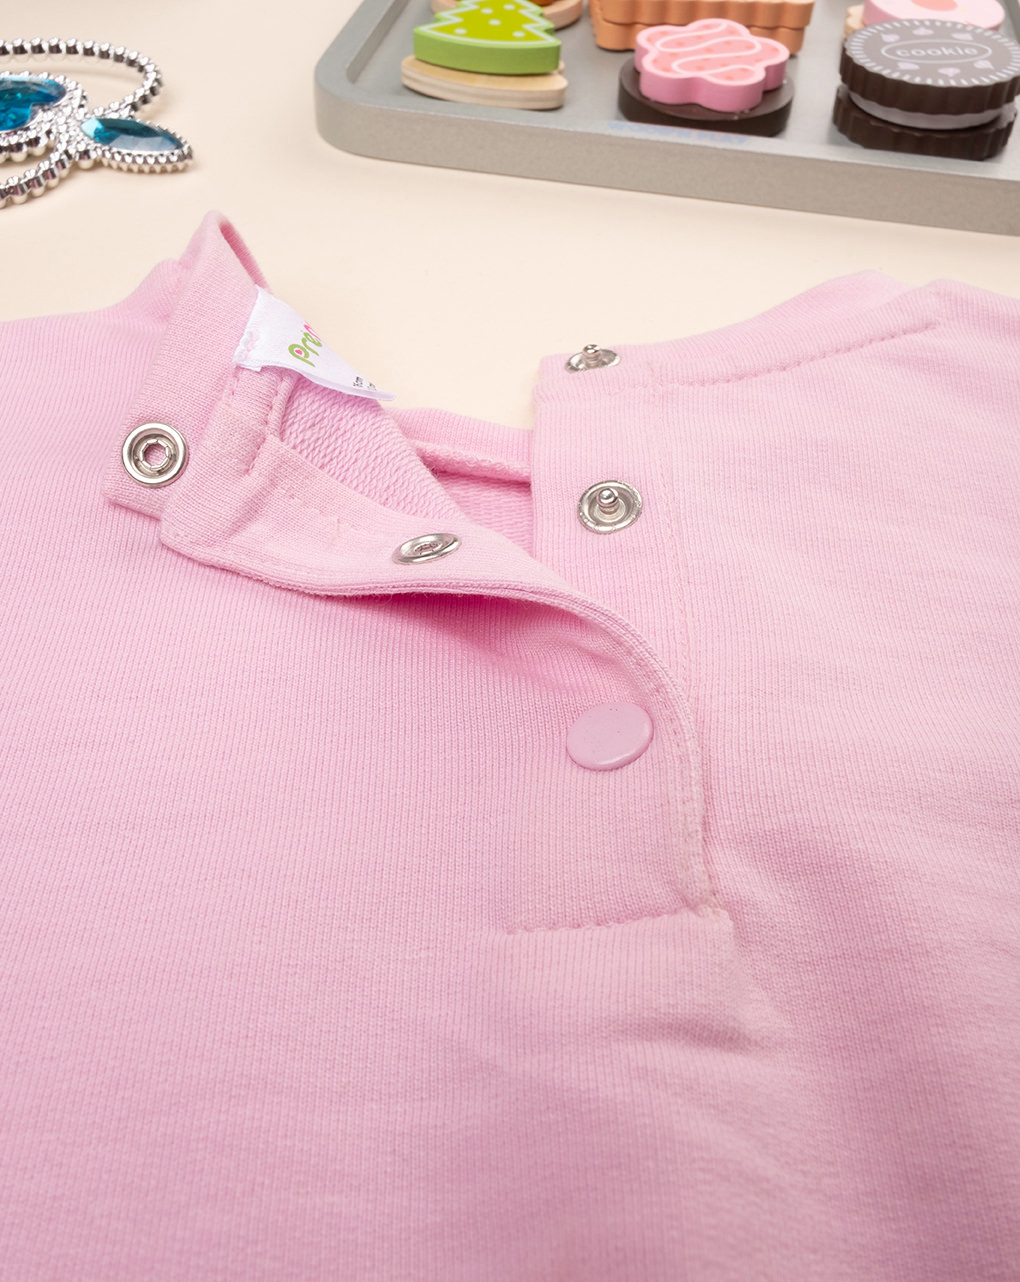 βρεφική μπλούζα ροζ i love you για κορίτσι - Prénatal